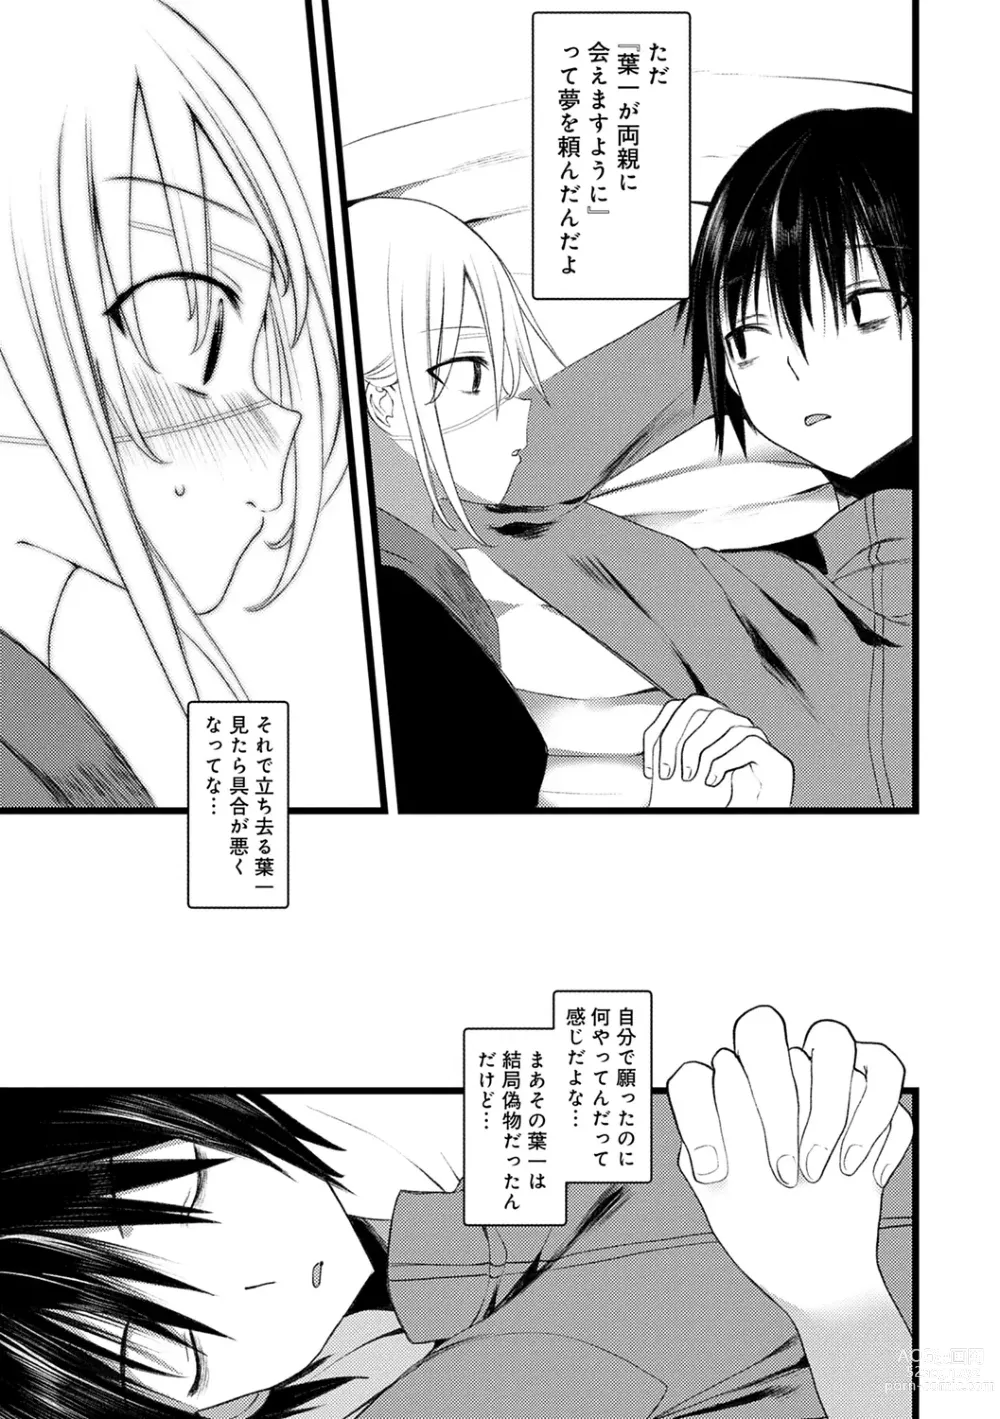 Page 191 of manga Kaiso Ikkenchou -Shonen Kaiki Inwashuu-